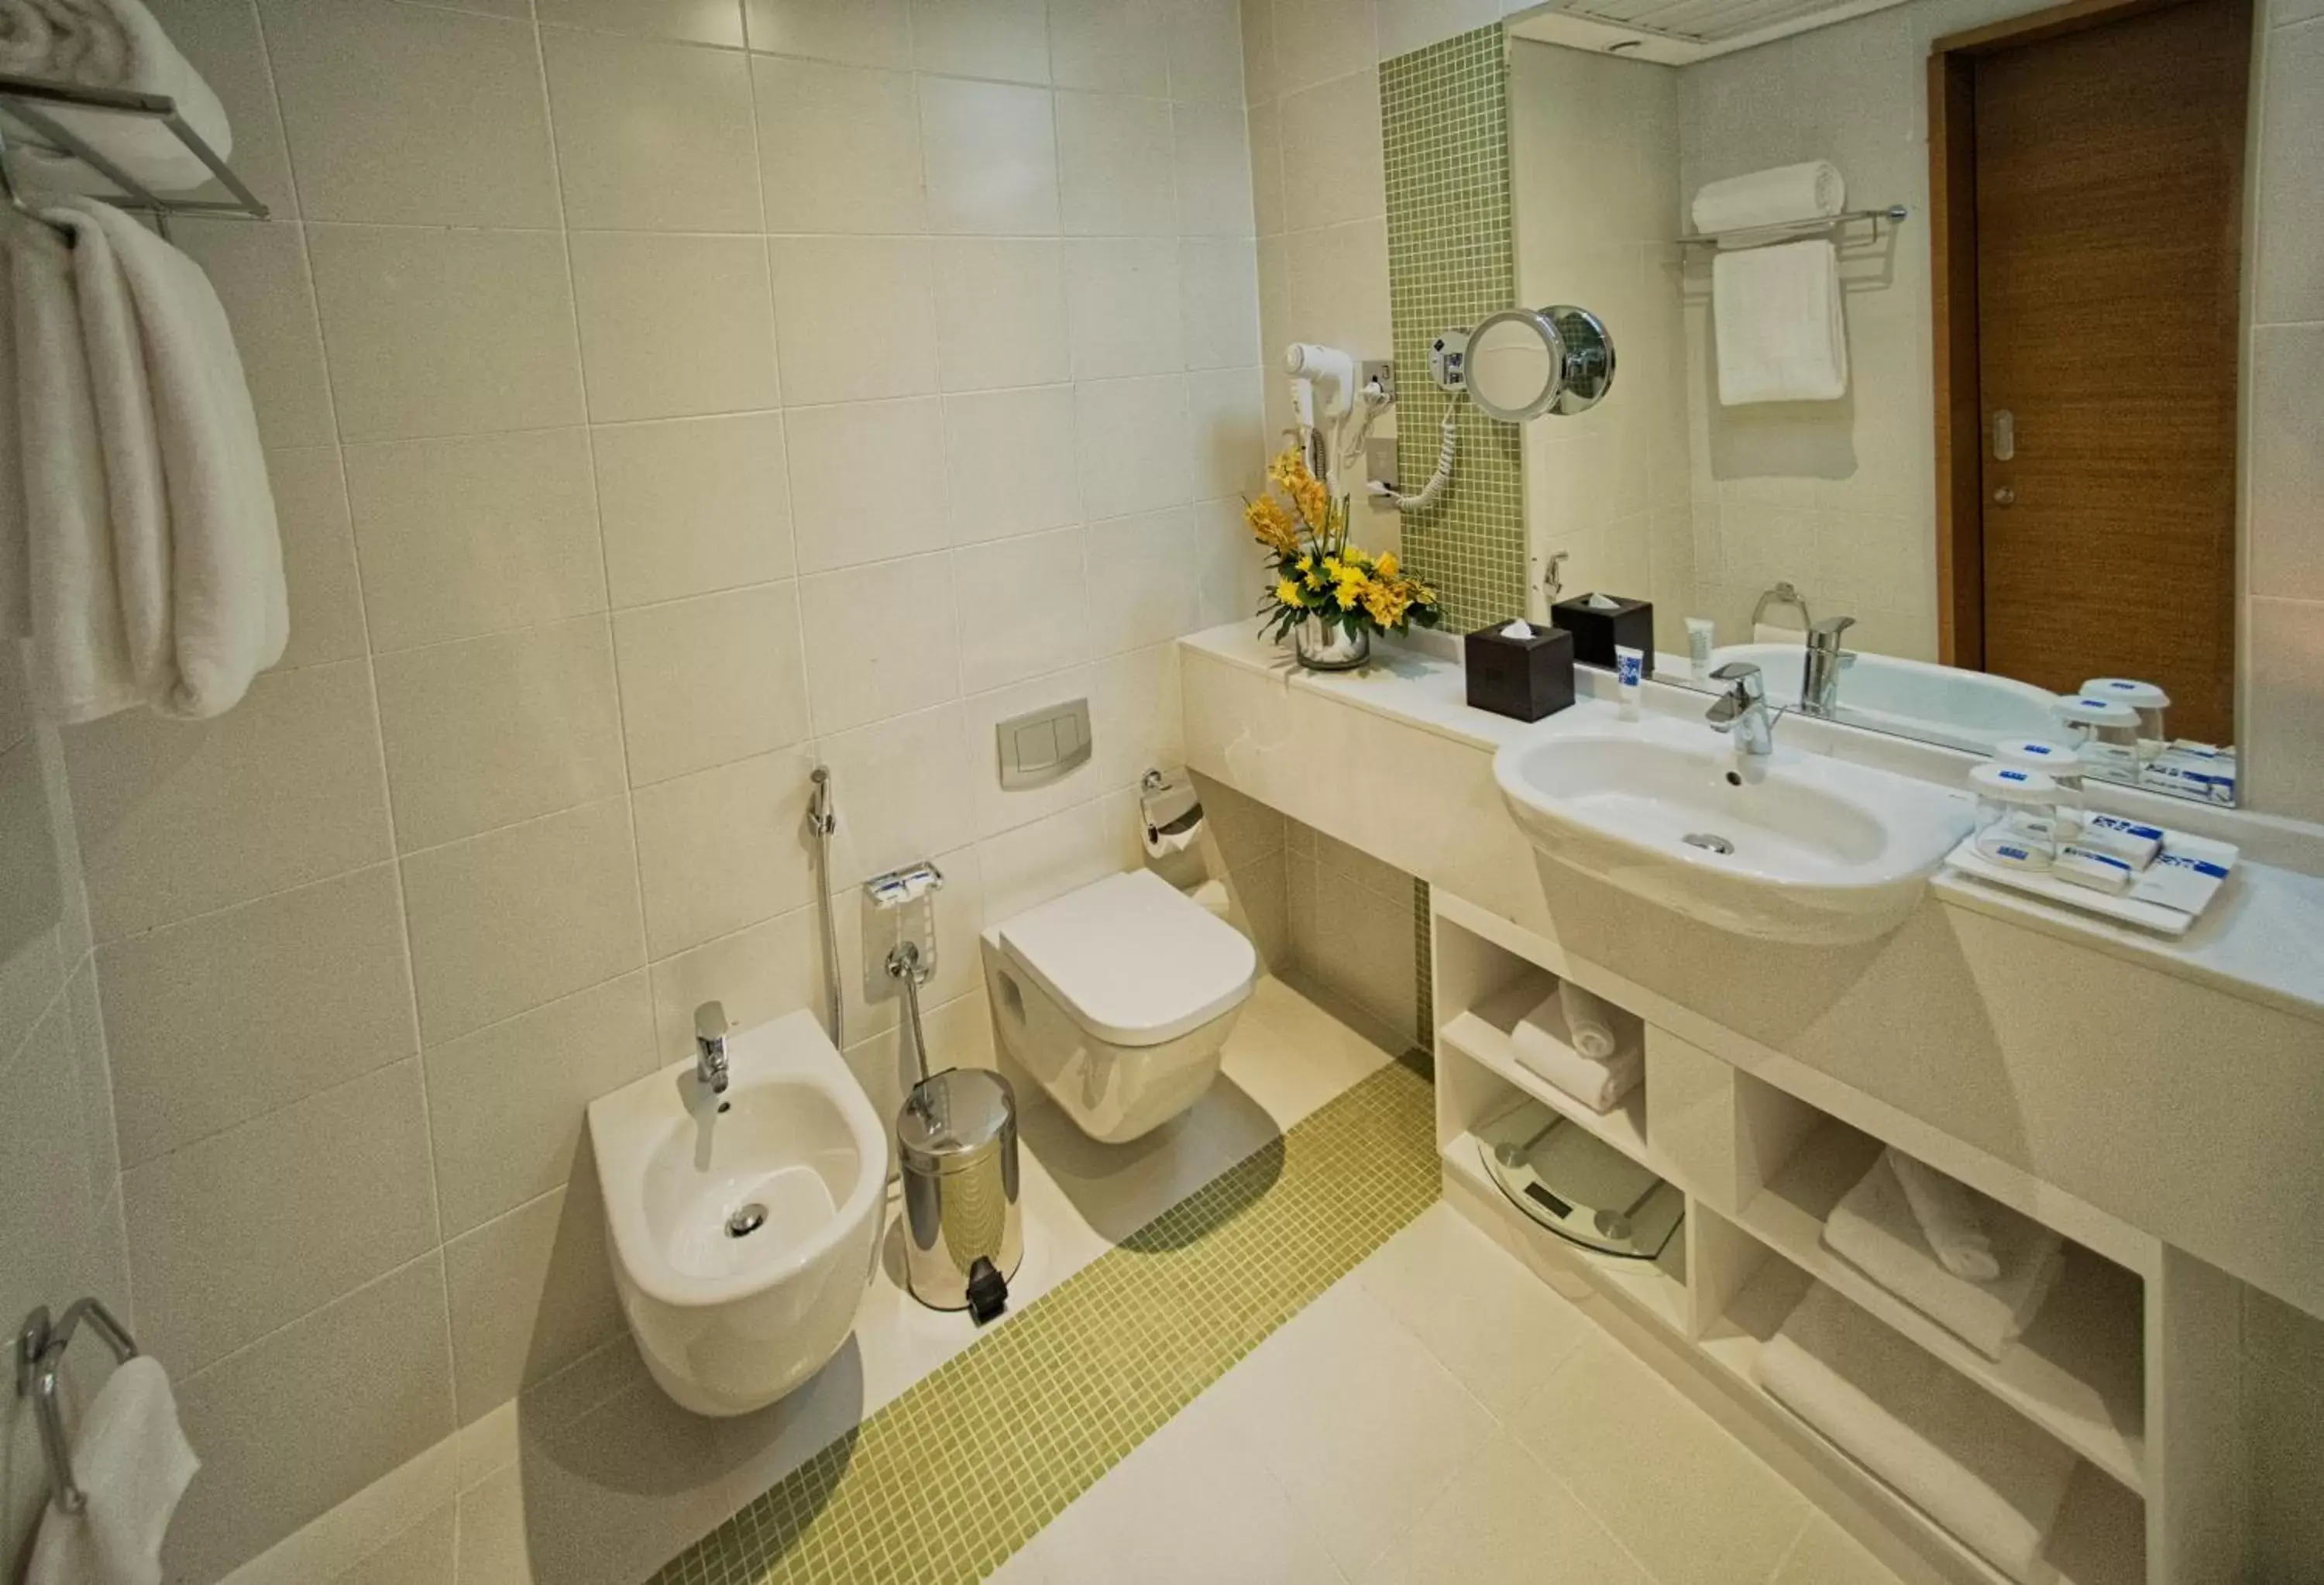 Toilet, Bathroom in TRYP by Wyndham Abu Dhabi City Center